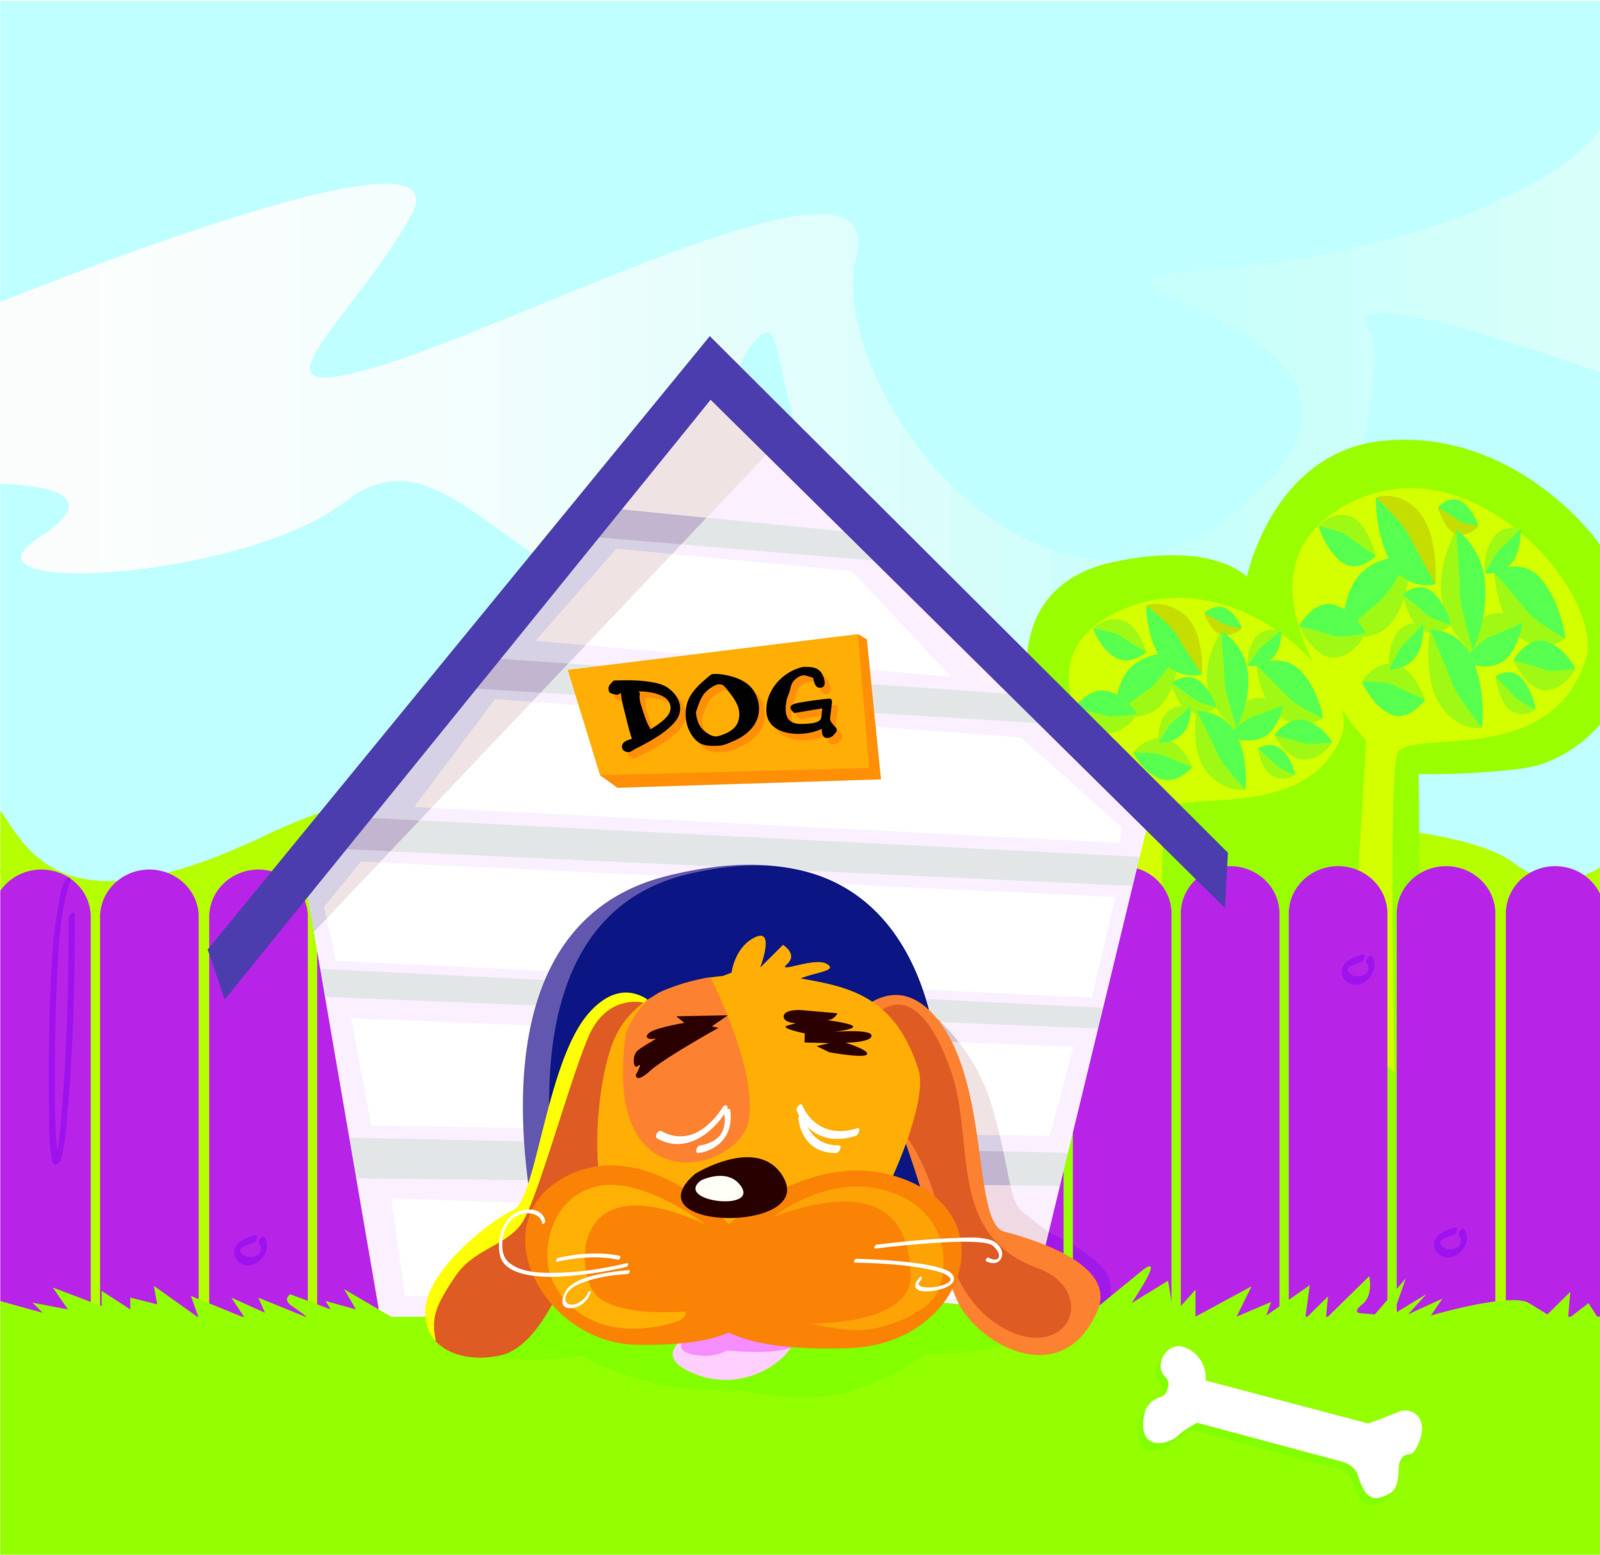 Cute dog sleep in dog house. Vector Illustration.